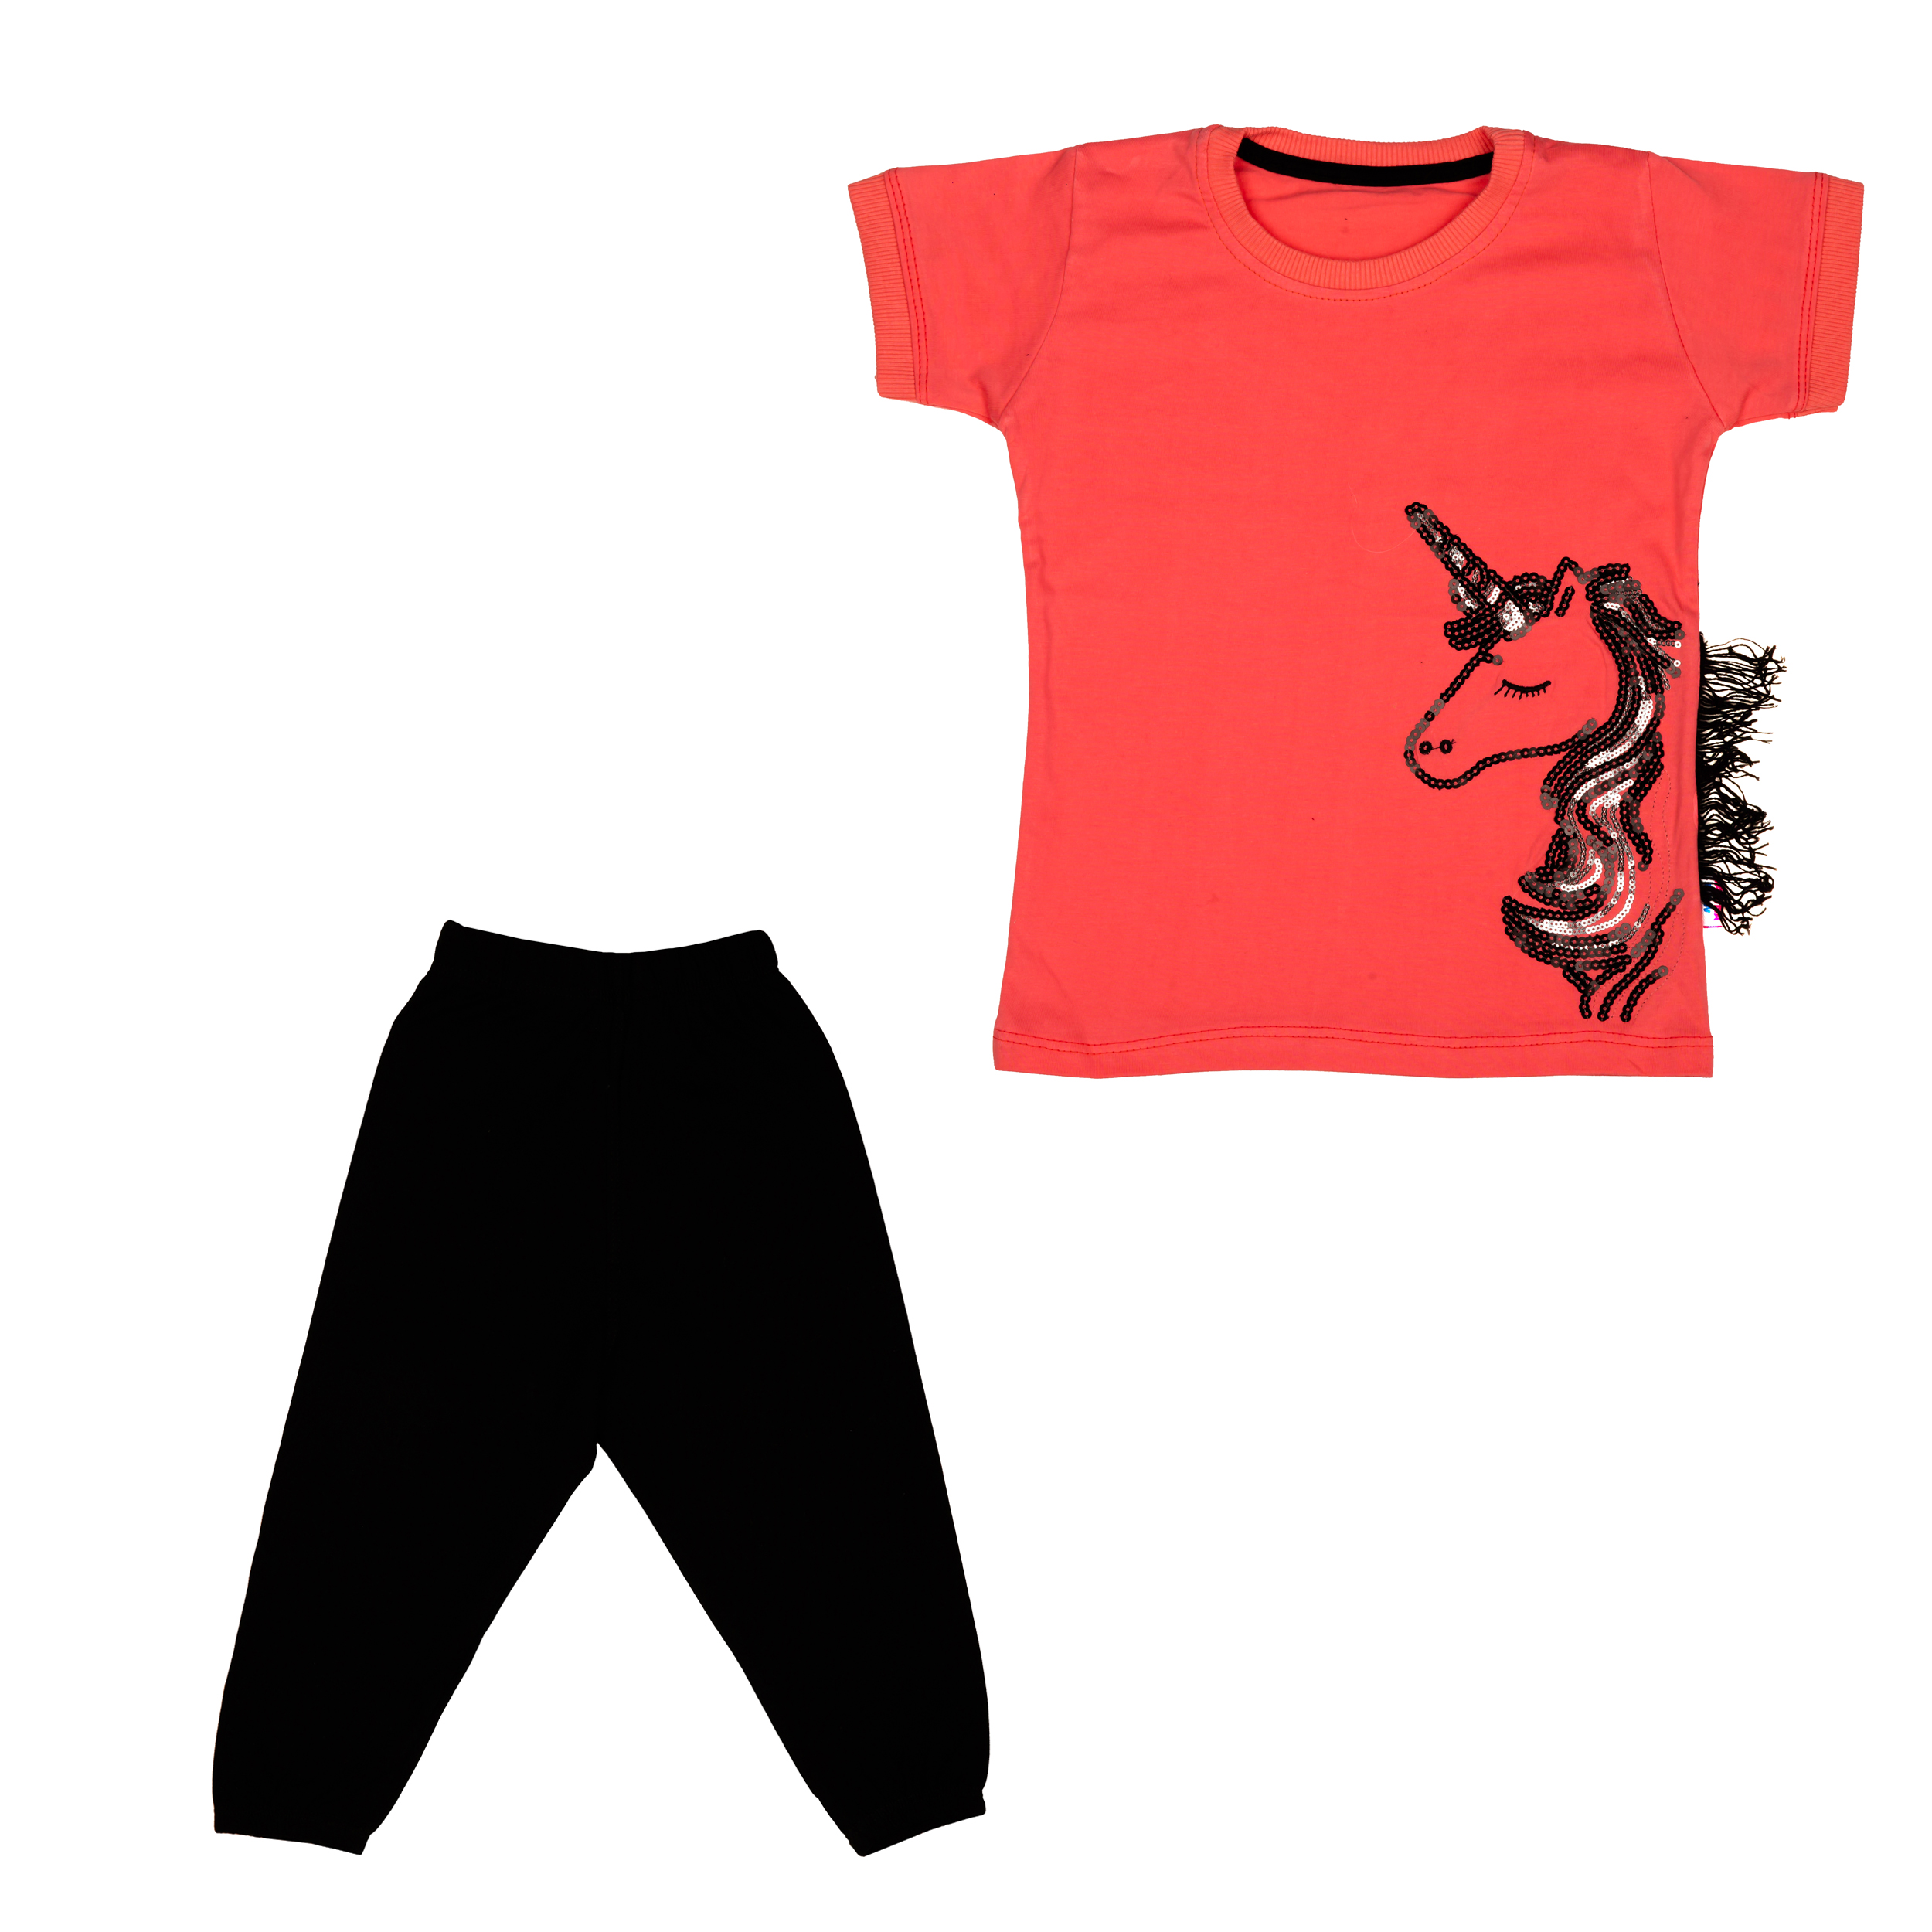 ست تی شرت و شلوارک دخترانه مدل یونیکورن رنگ قرمز